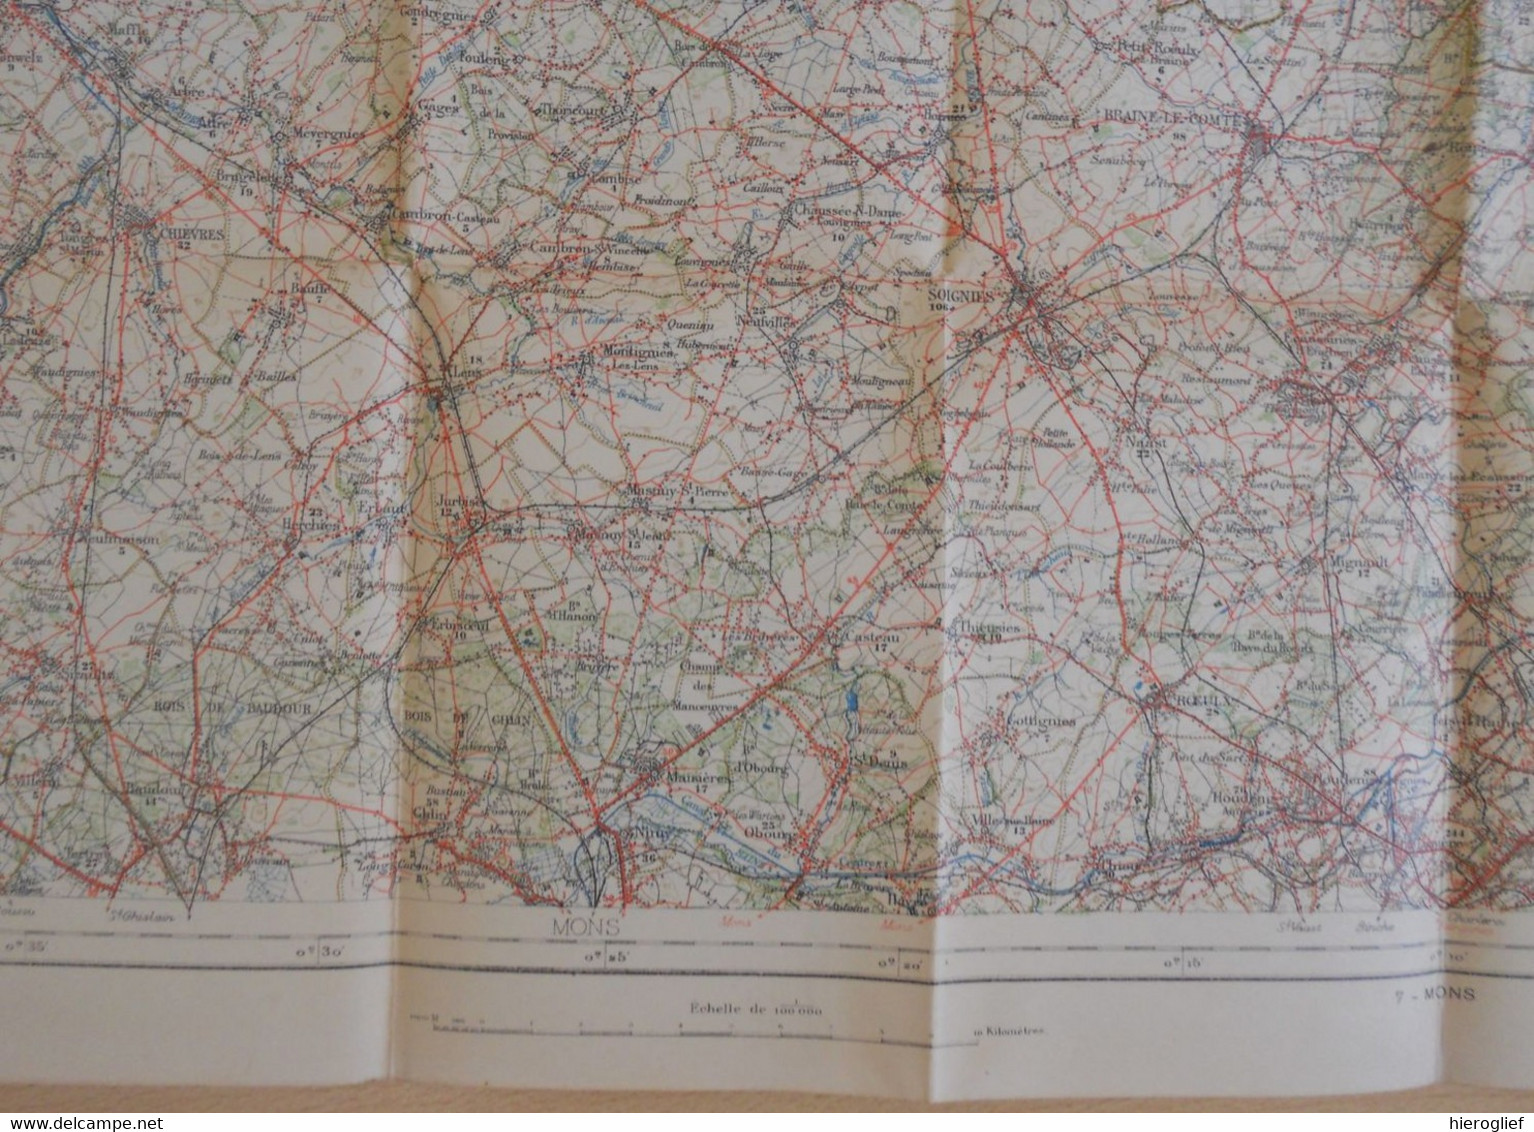 Carte De BELGIQUE Nr 5 BRUXELLES Institut Cartographique Militaire Impression Litho 1933 LEUVEN AALST NIJVEL WAVRE - Cartes Topographiques